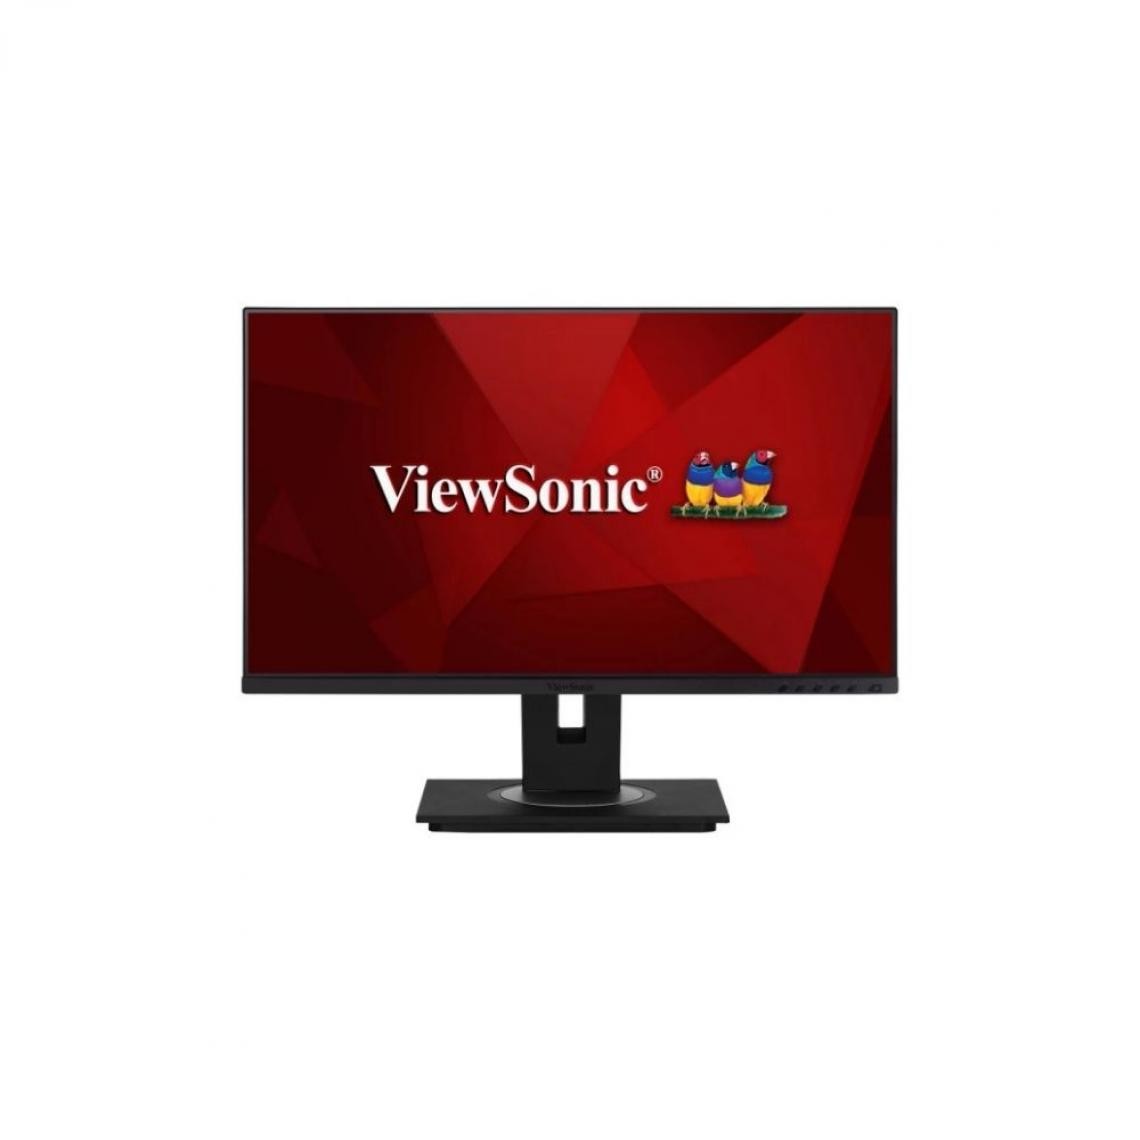 Viewsonic - Ecran 24" Viewsonic VG2456 FHD 1080p LED Superclear IPS 16:9 HDMI DP 2xUSB haut parleurs et pied ergonomique avec angle d'inclinaison et double pivot - Moniteur PC